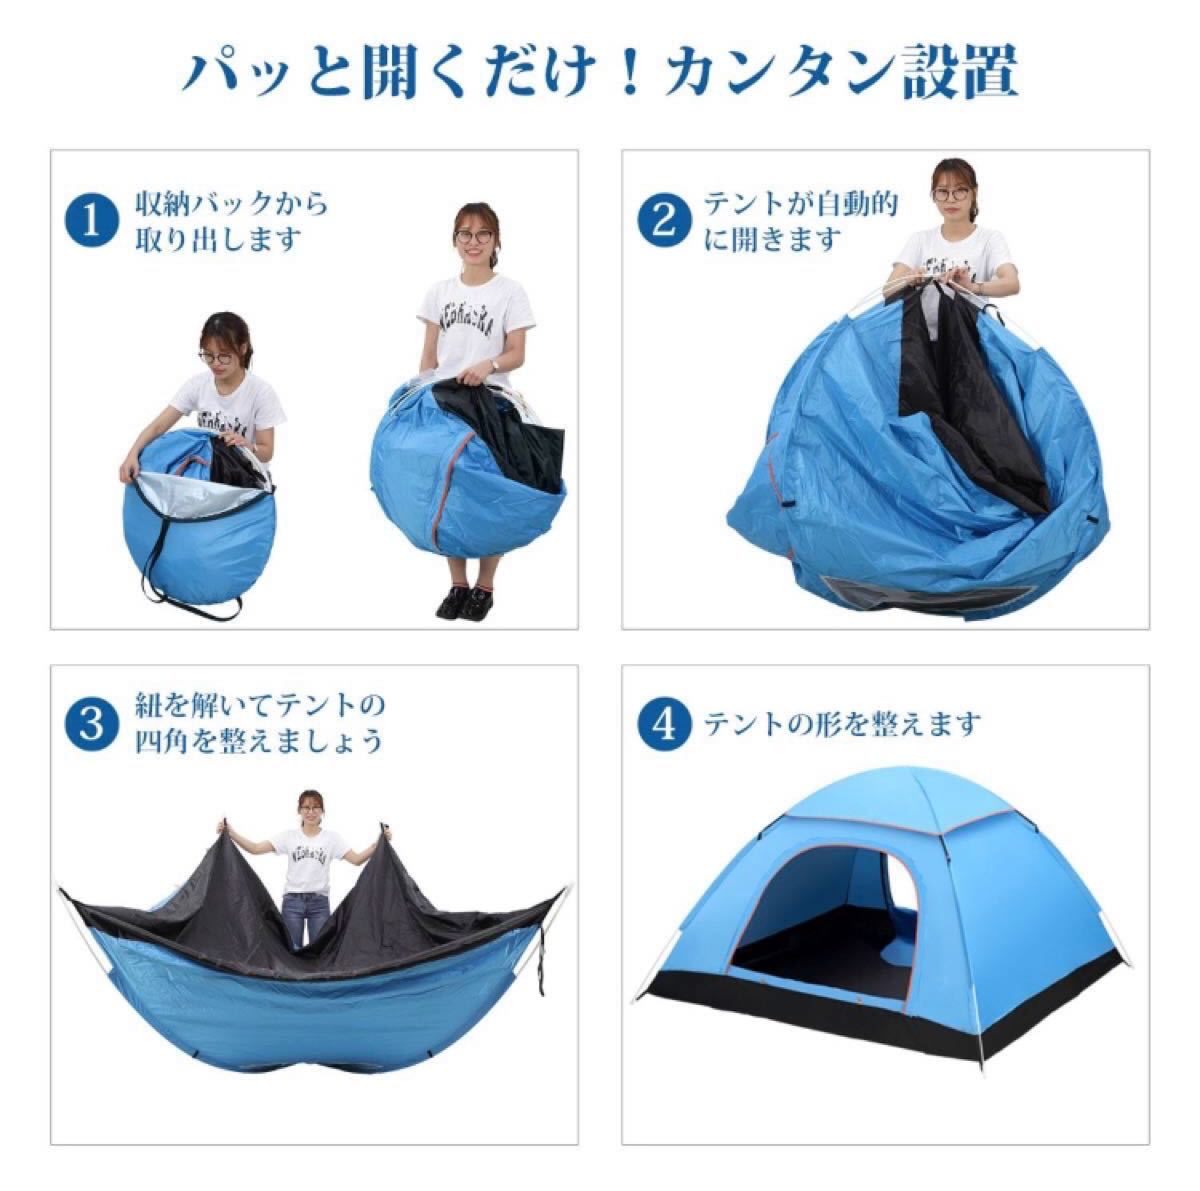 ワンタッチテント 2-3人用 ブルー キャンプ アウトドア用品 自動 ドームテント 簡単 キャンプテント 軽量 折りたたみ 805